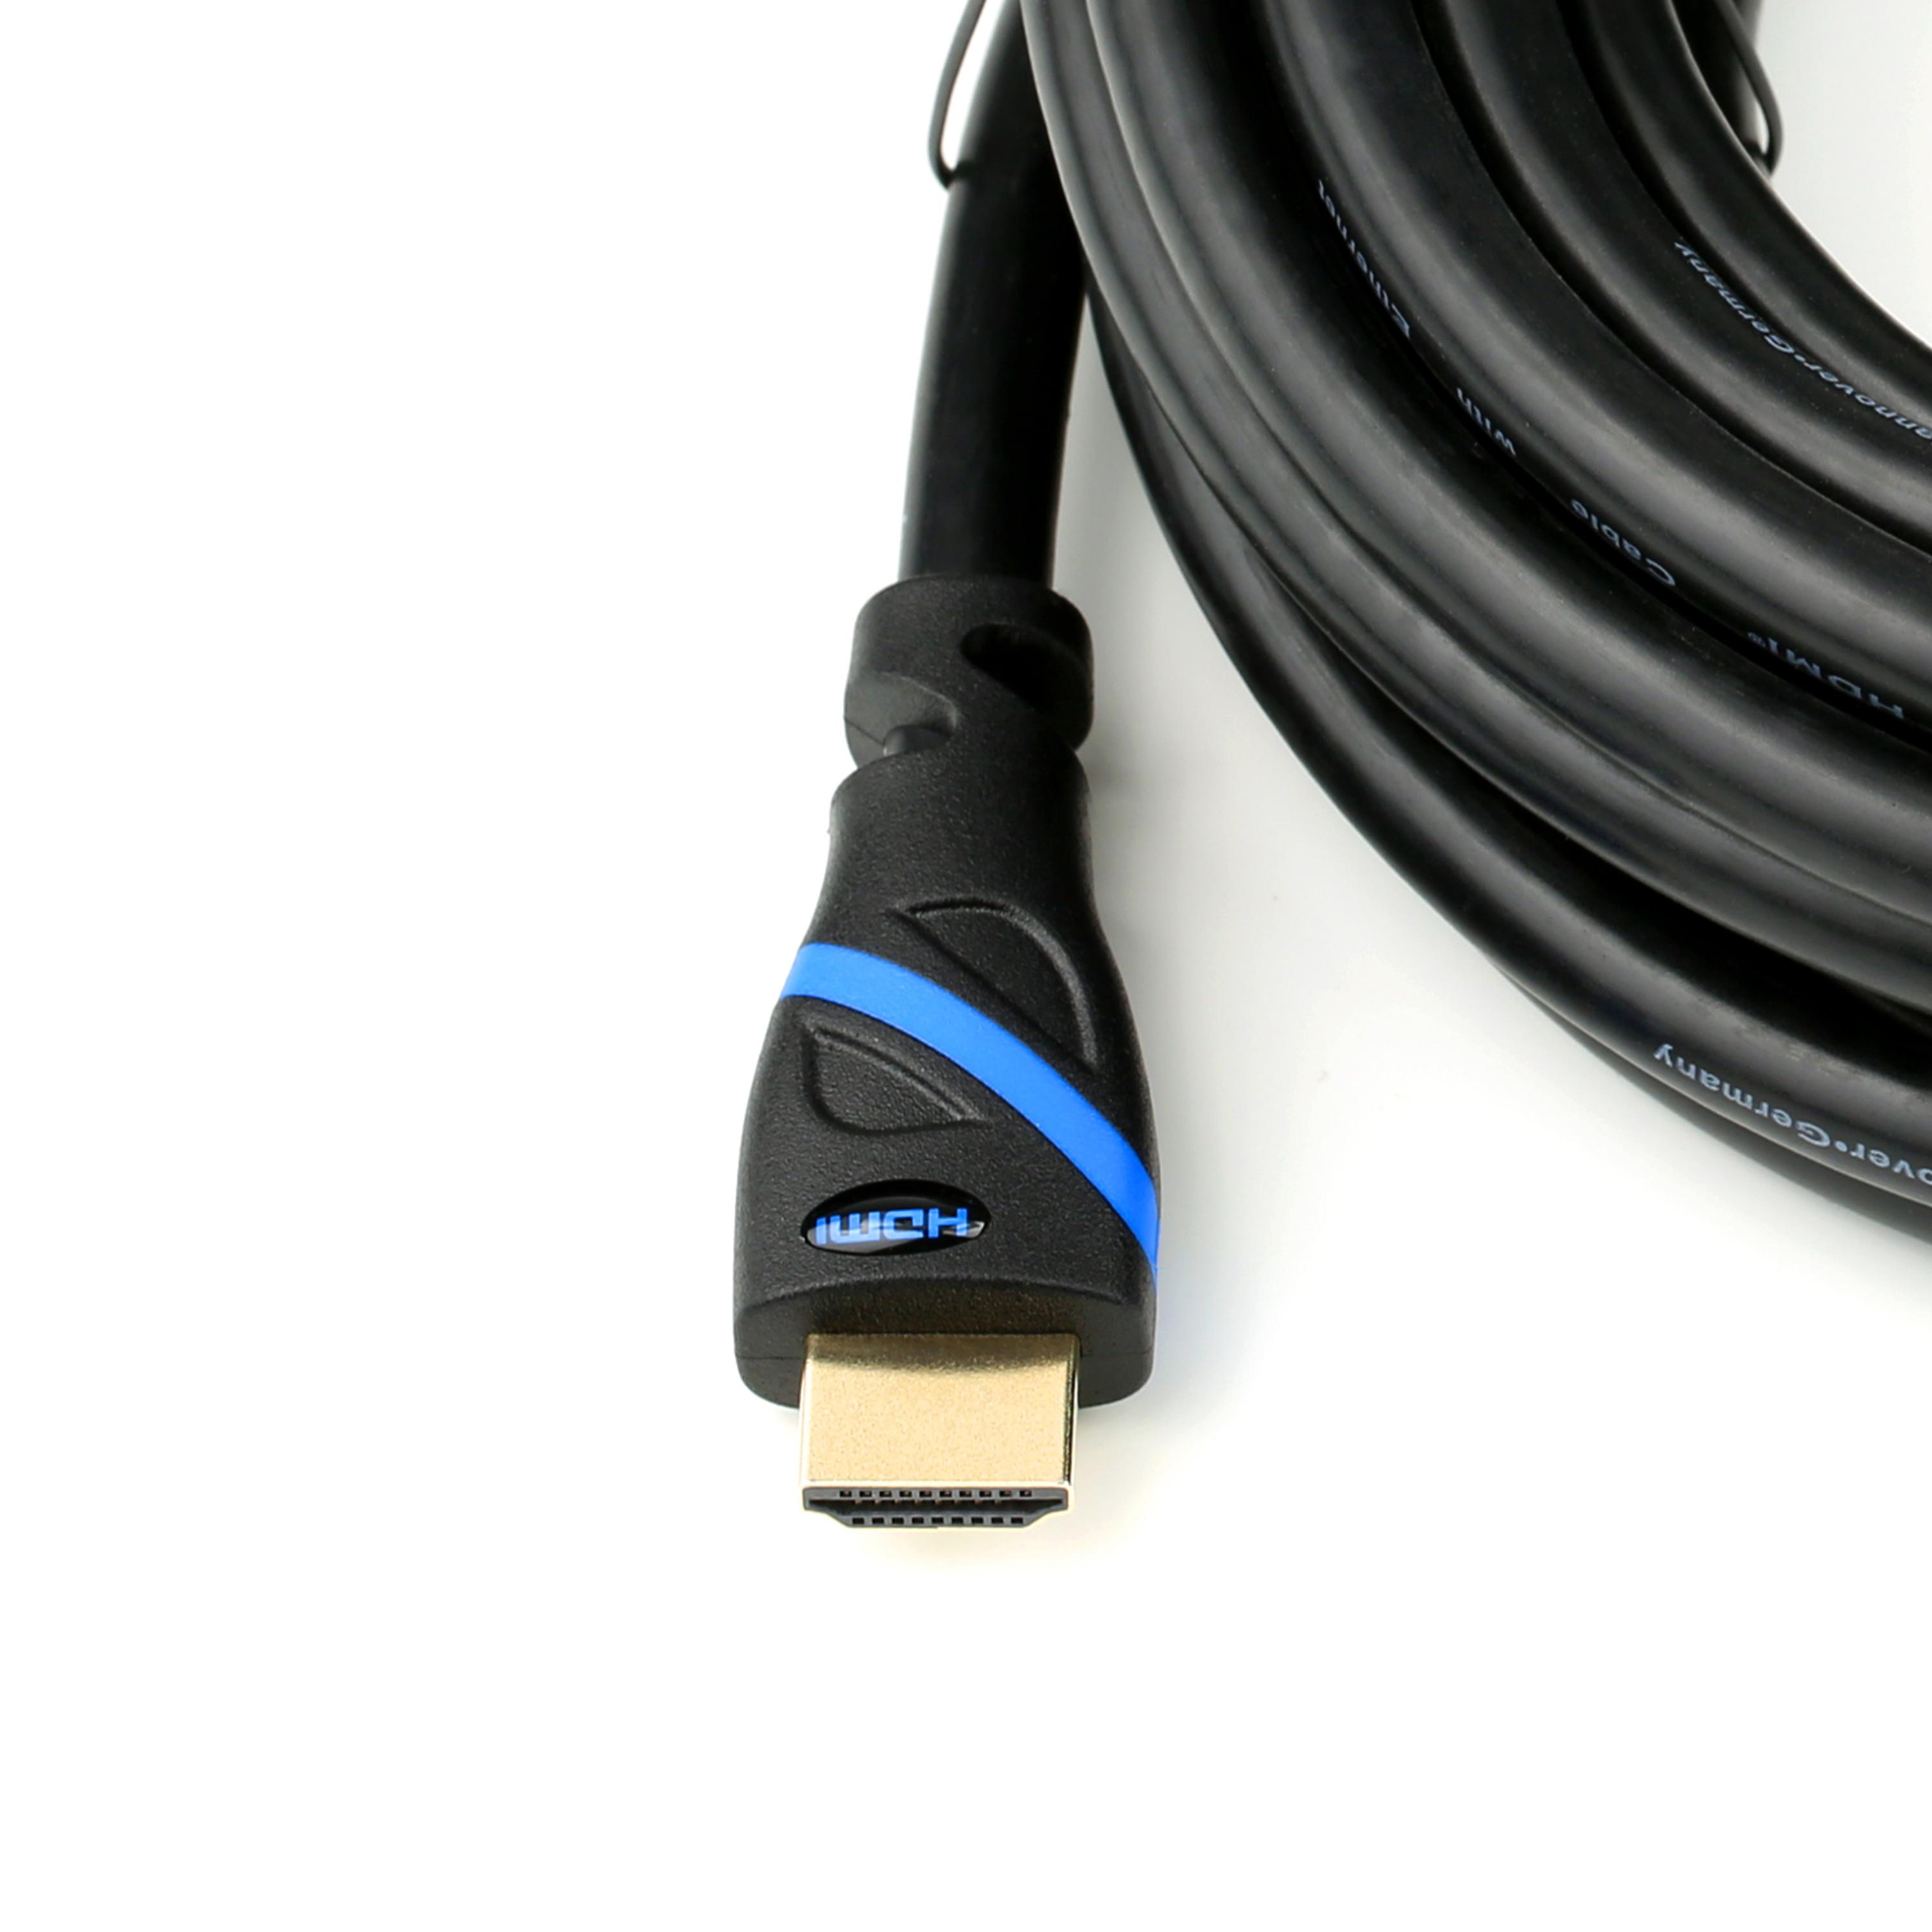 CSL HDMI 2.0 Kabel, 2m Kabel, schwarz/blau HDMI